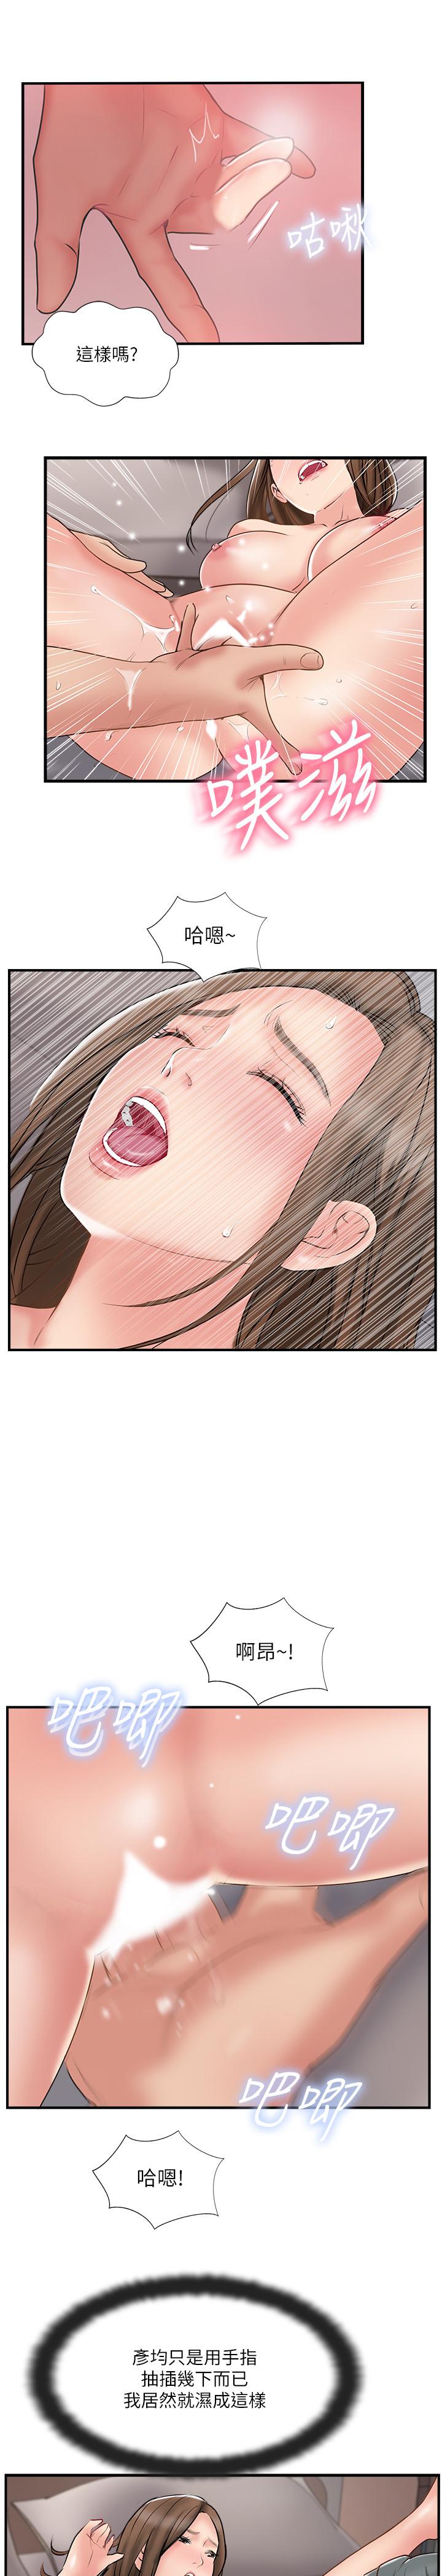 韩国污漫画 完美新伴侶 第38话-想尝试肛交的晓琳 20